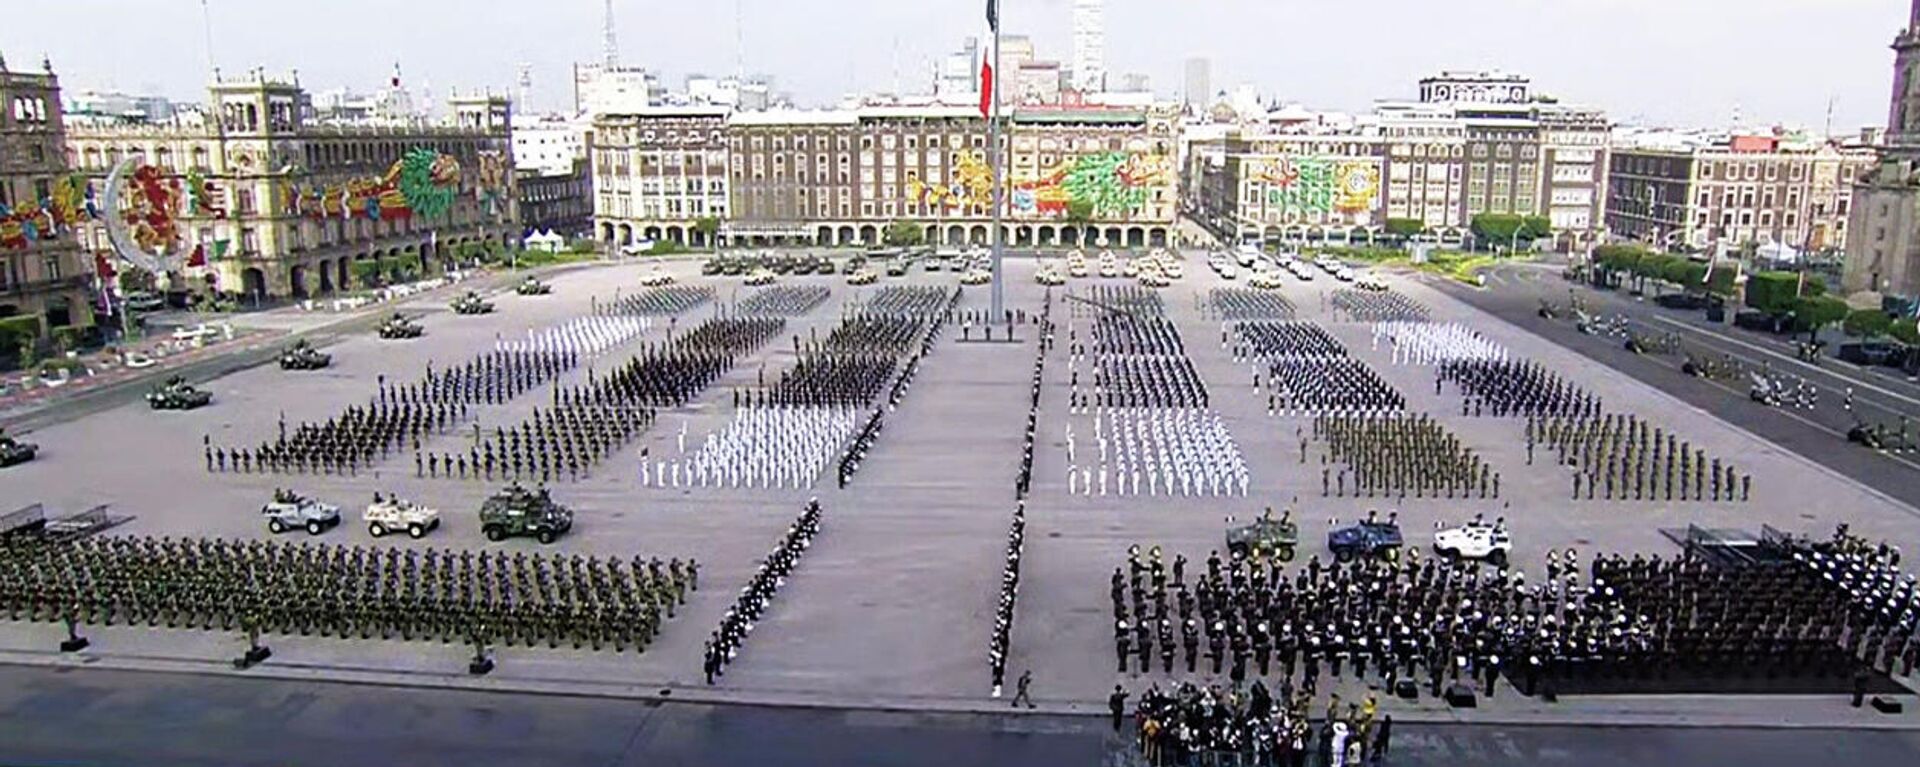 Desfile militar en México por los 200 años de la consumación de la Independencia  - Sputnik Mundo, 1920, 16.09.2021